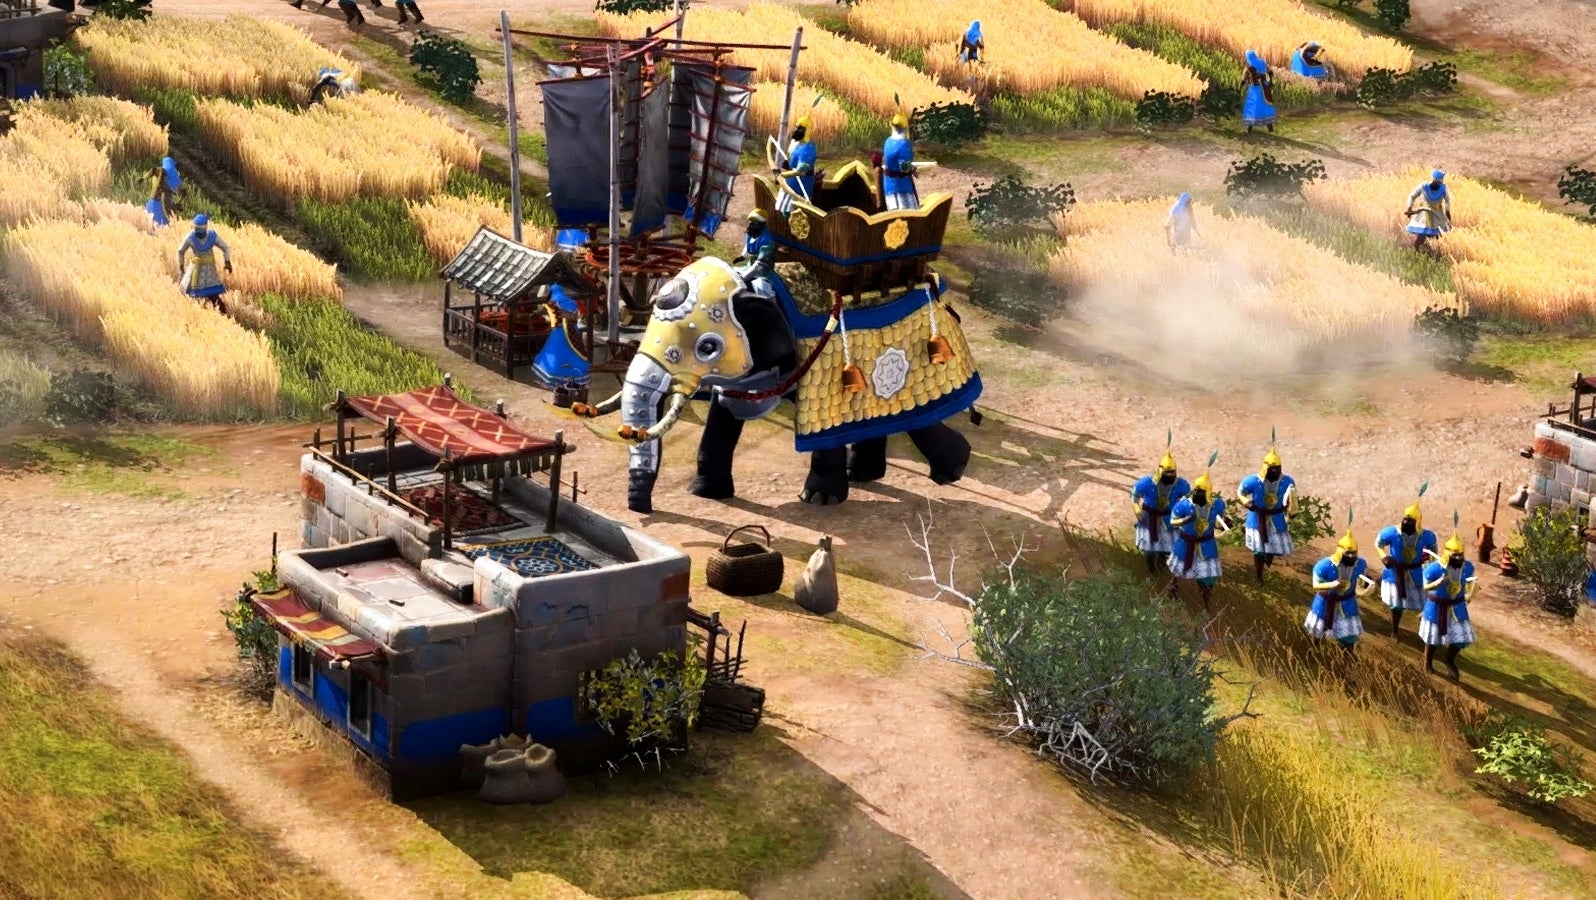 Bilder zu Age of Empires 4 erscheint im Herbst - Closed Beta geplant